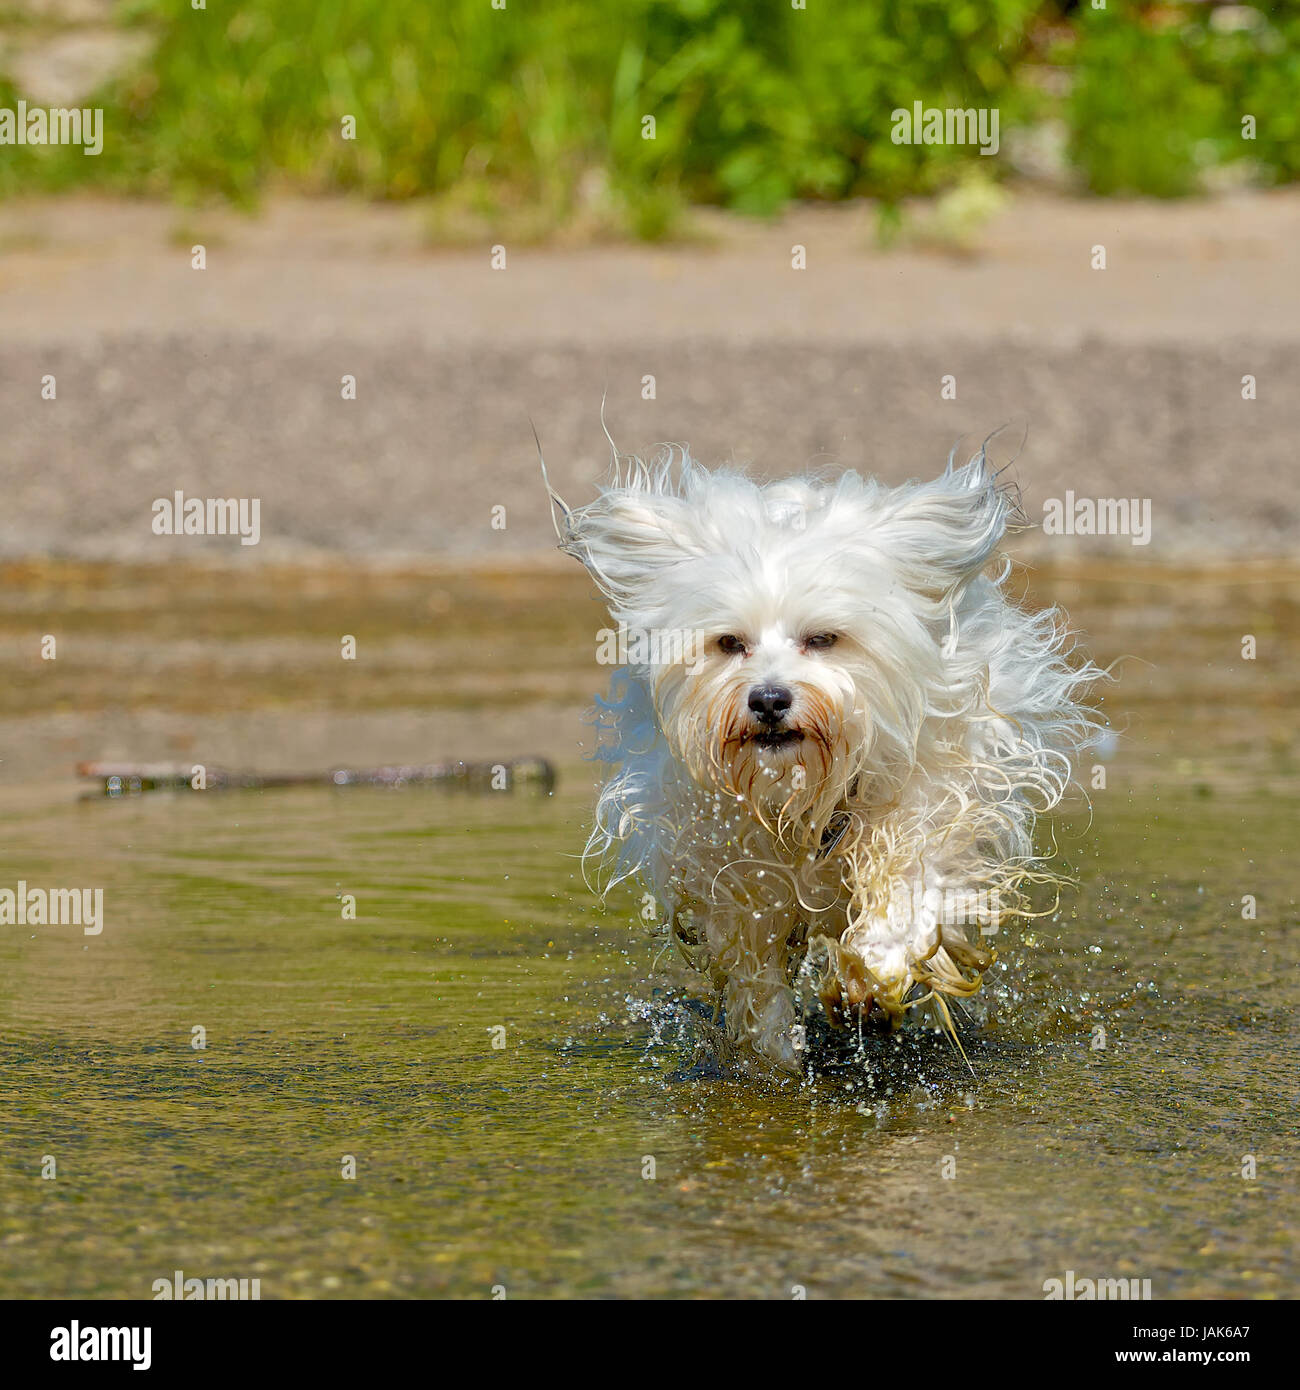 Ein kleiner wuscheliger Hund rennt voller Lebensfreude durch einen Bach dass das Wasser nur so spritzt. Stock Photo